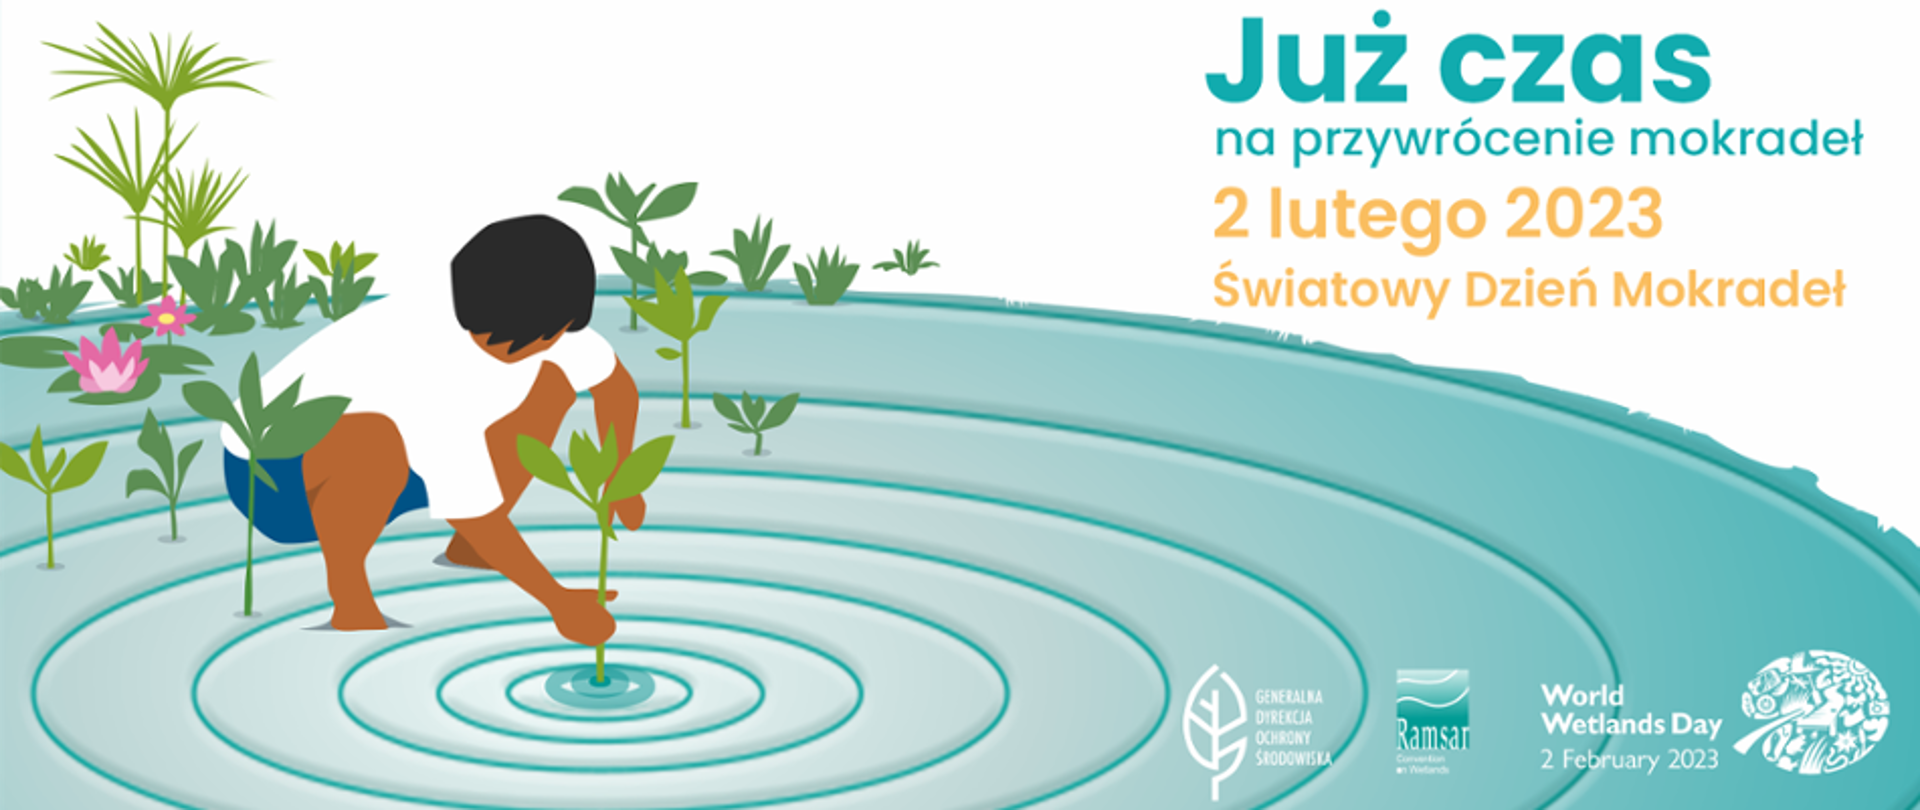 INFOGRAFIKA - z wody wyrastają rośliny, człowiek zanurza w wodzie rękę i wyrywa roślinę, po prawej stronie znajduje się napis: Już czas na przywrócenie mokradeł 2 lutego 2023 Światowy Dzień Mokradeł